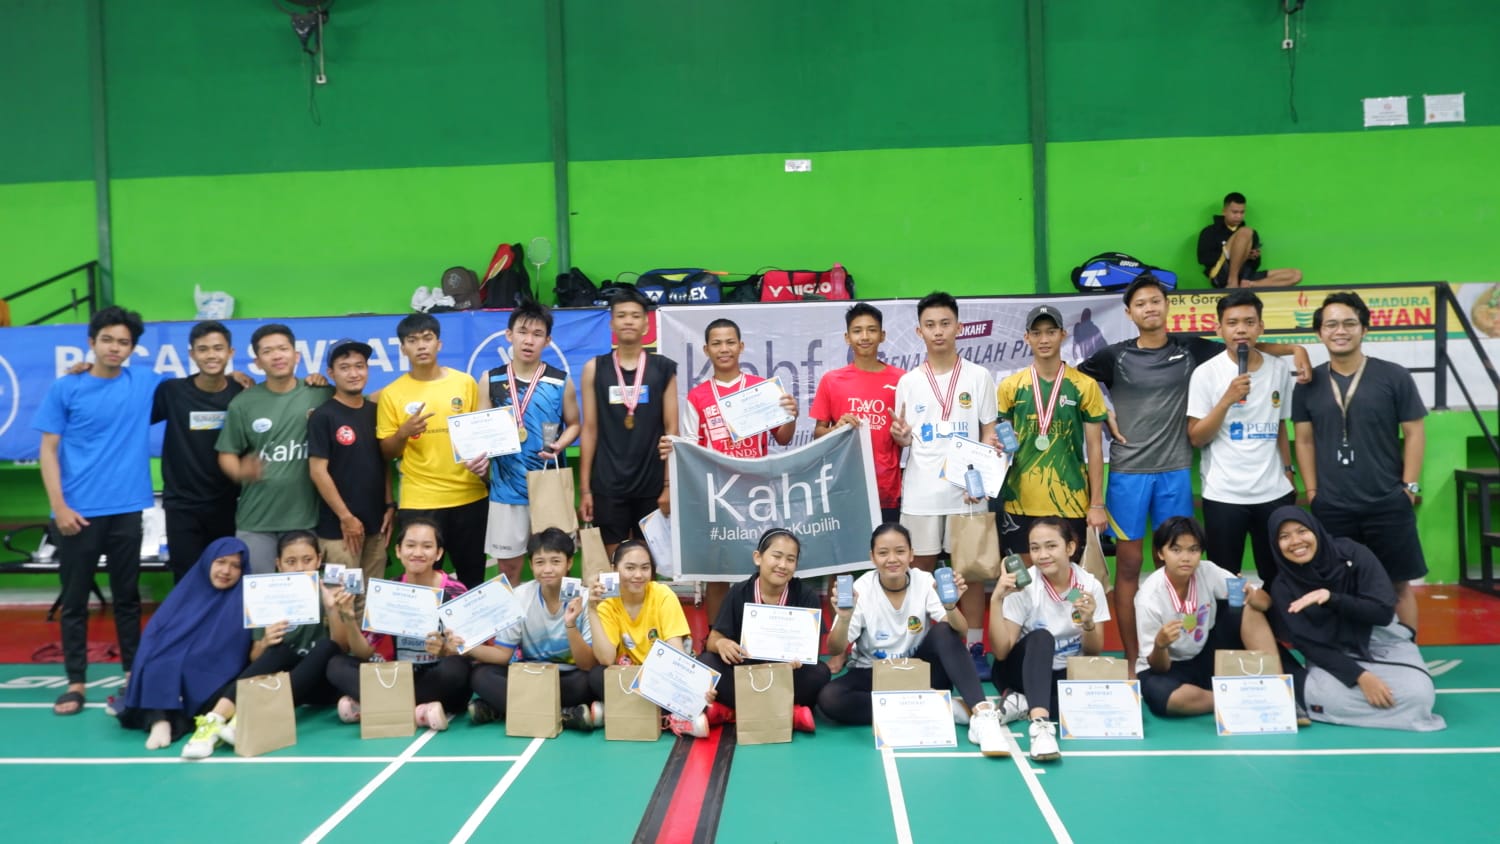 Kahf Dukung PB Batra Bootchamp, Diikuti Atlet Muda Dari 12 Klub Badminton